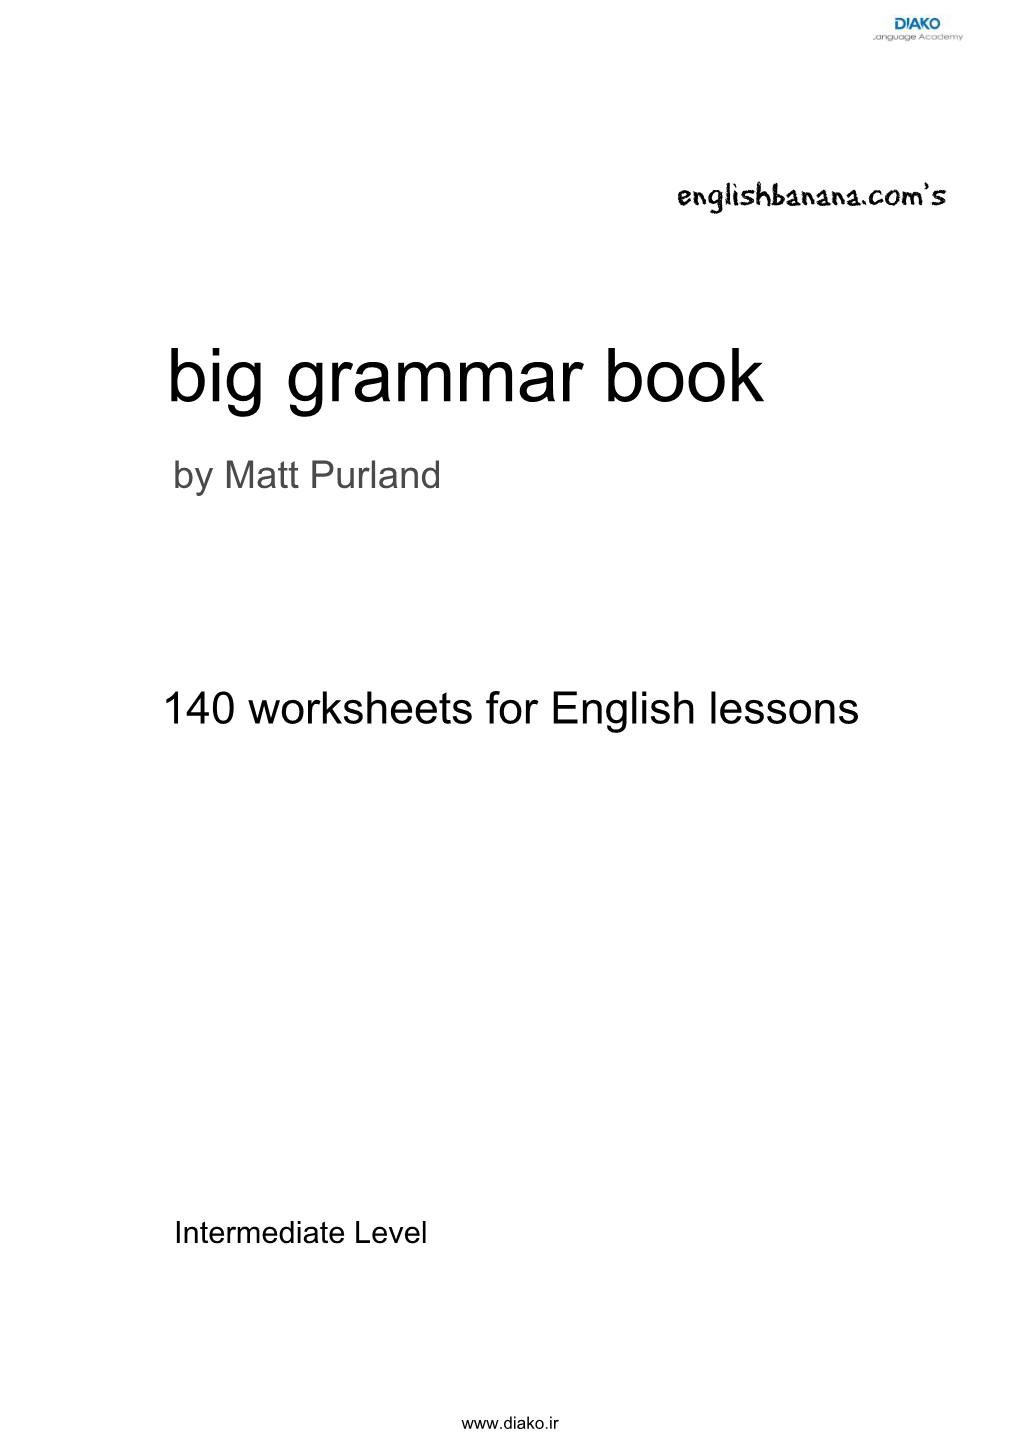 Big Grammar Book Intermediate Level